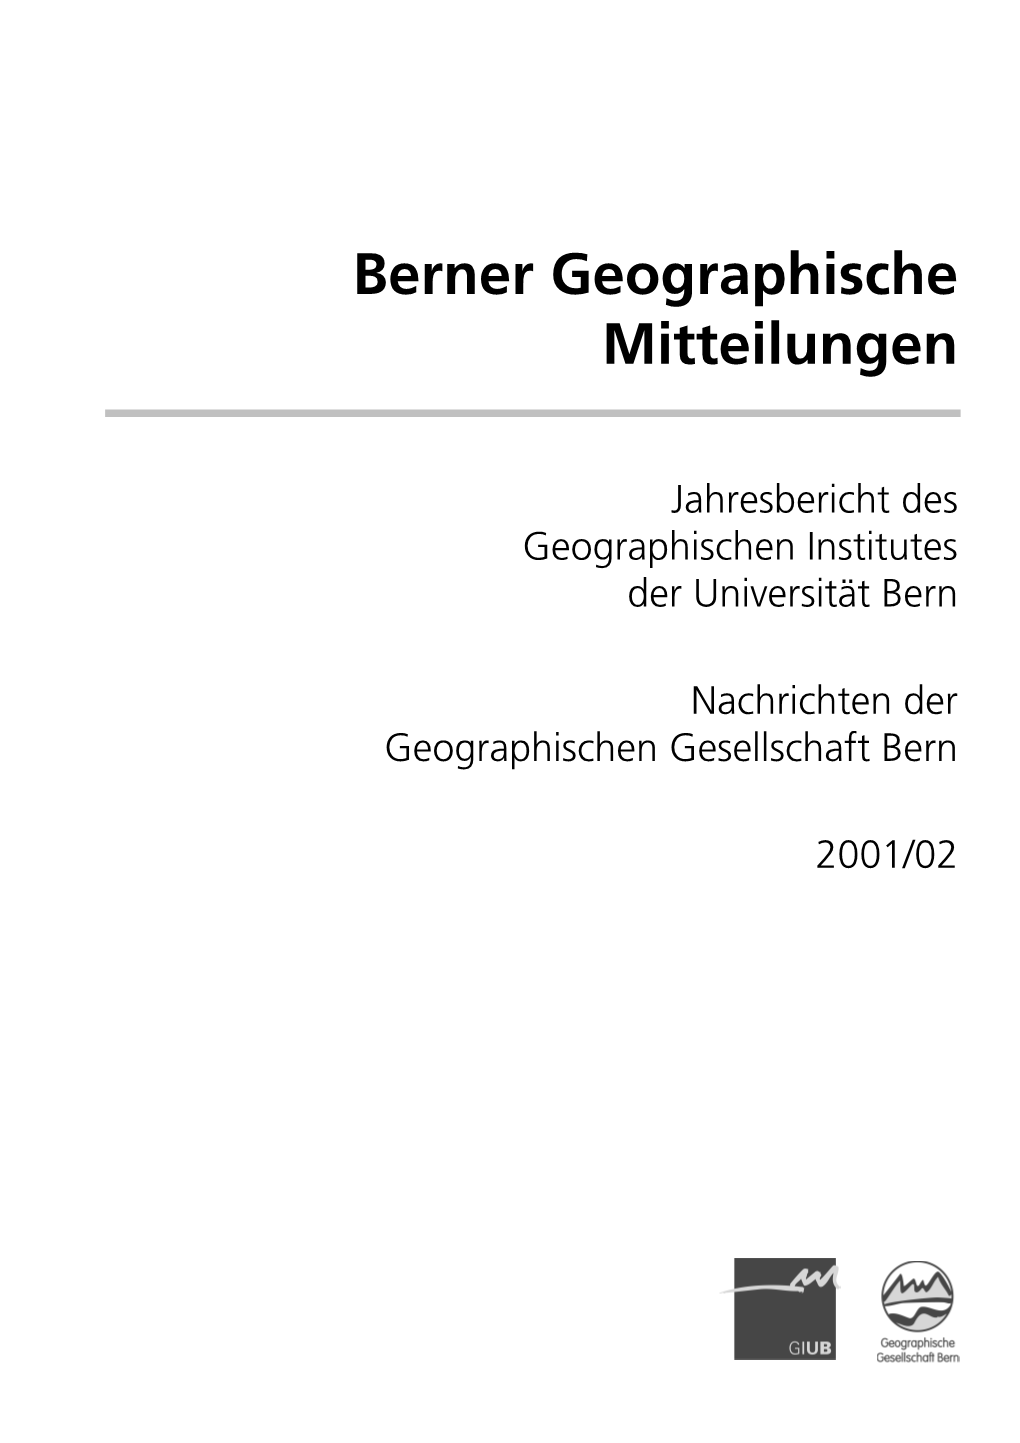 Berner Geographische Mitteilungen